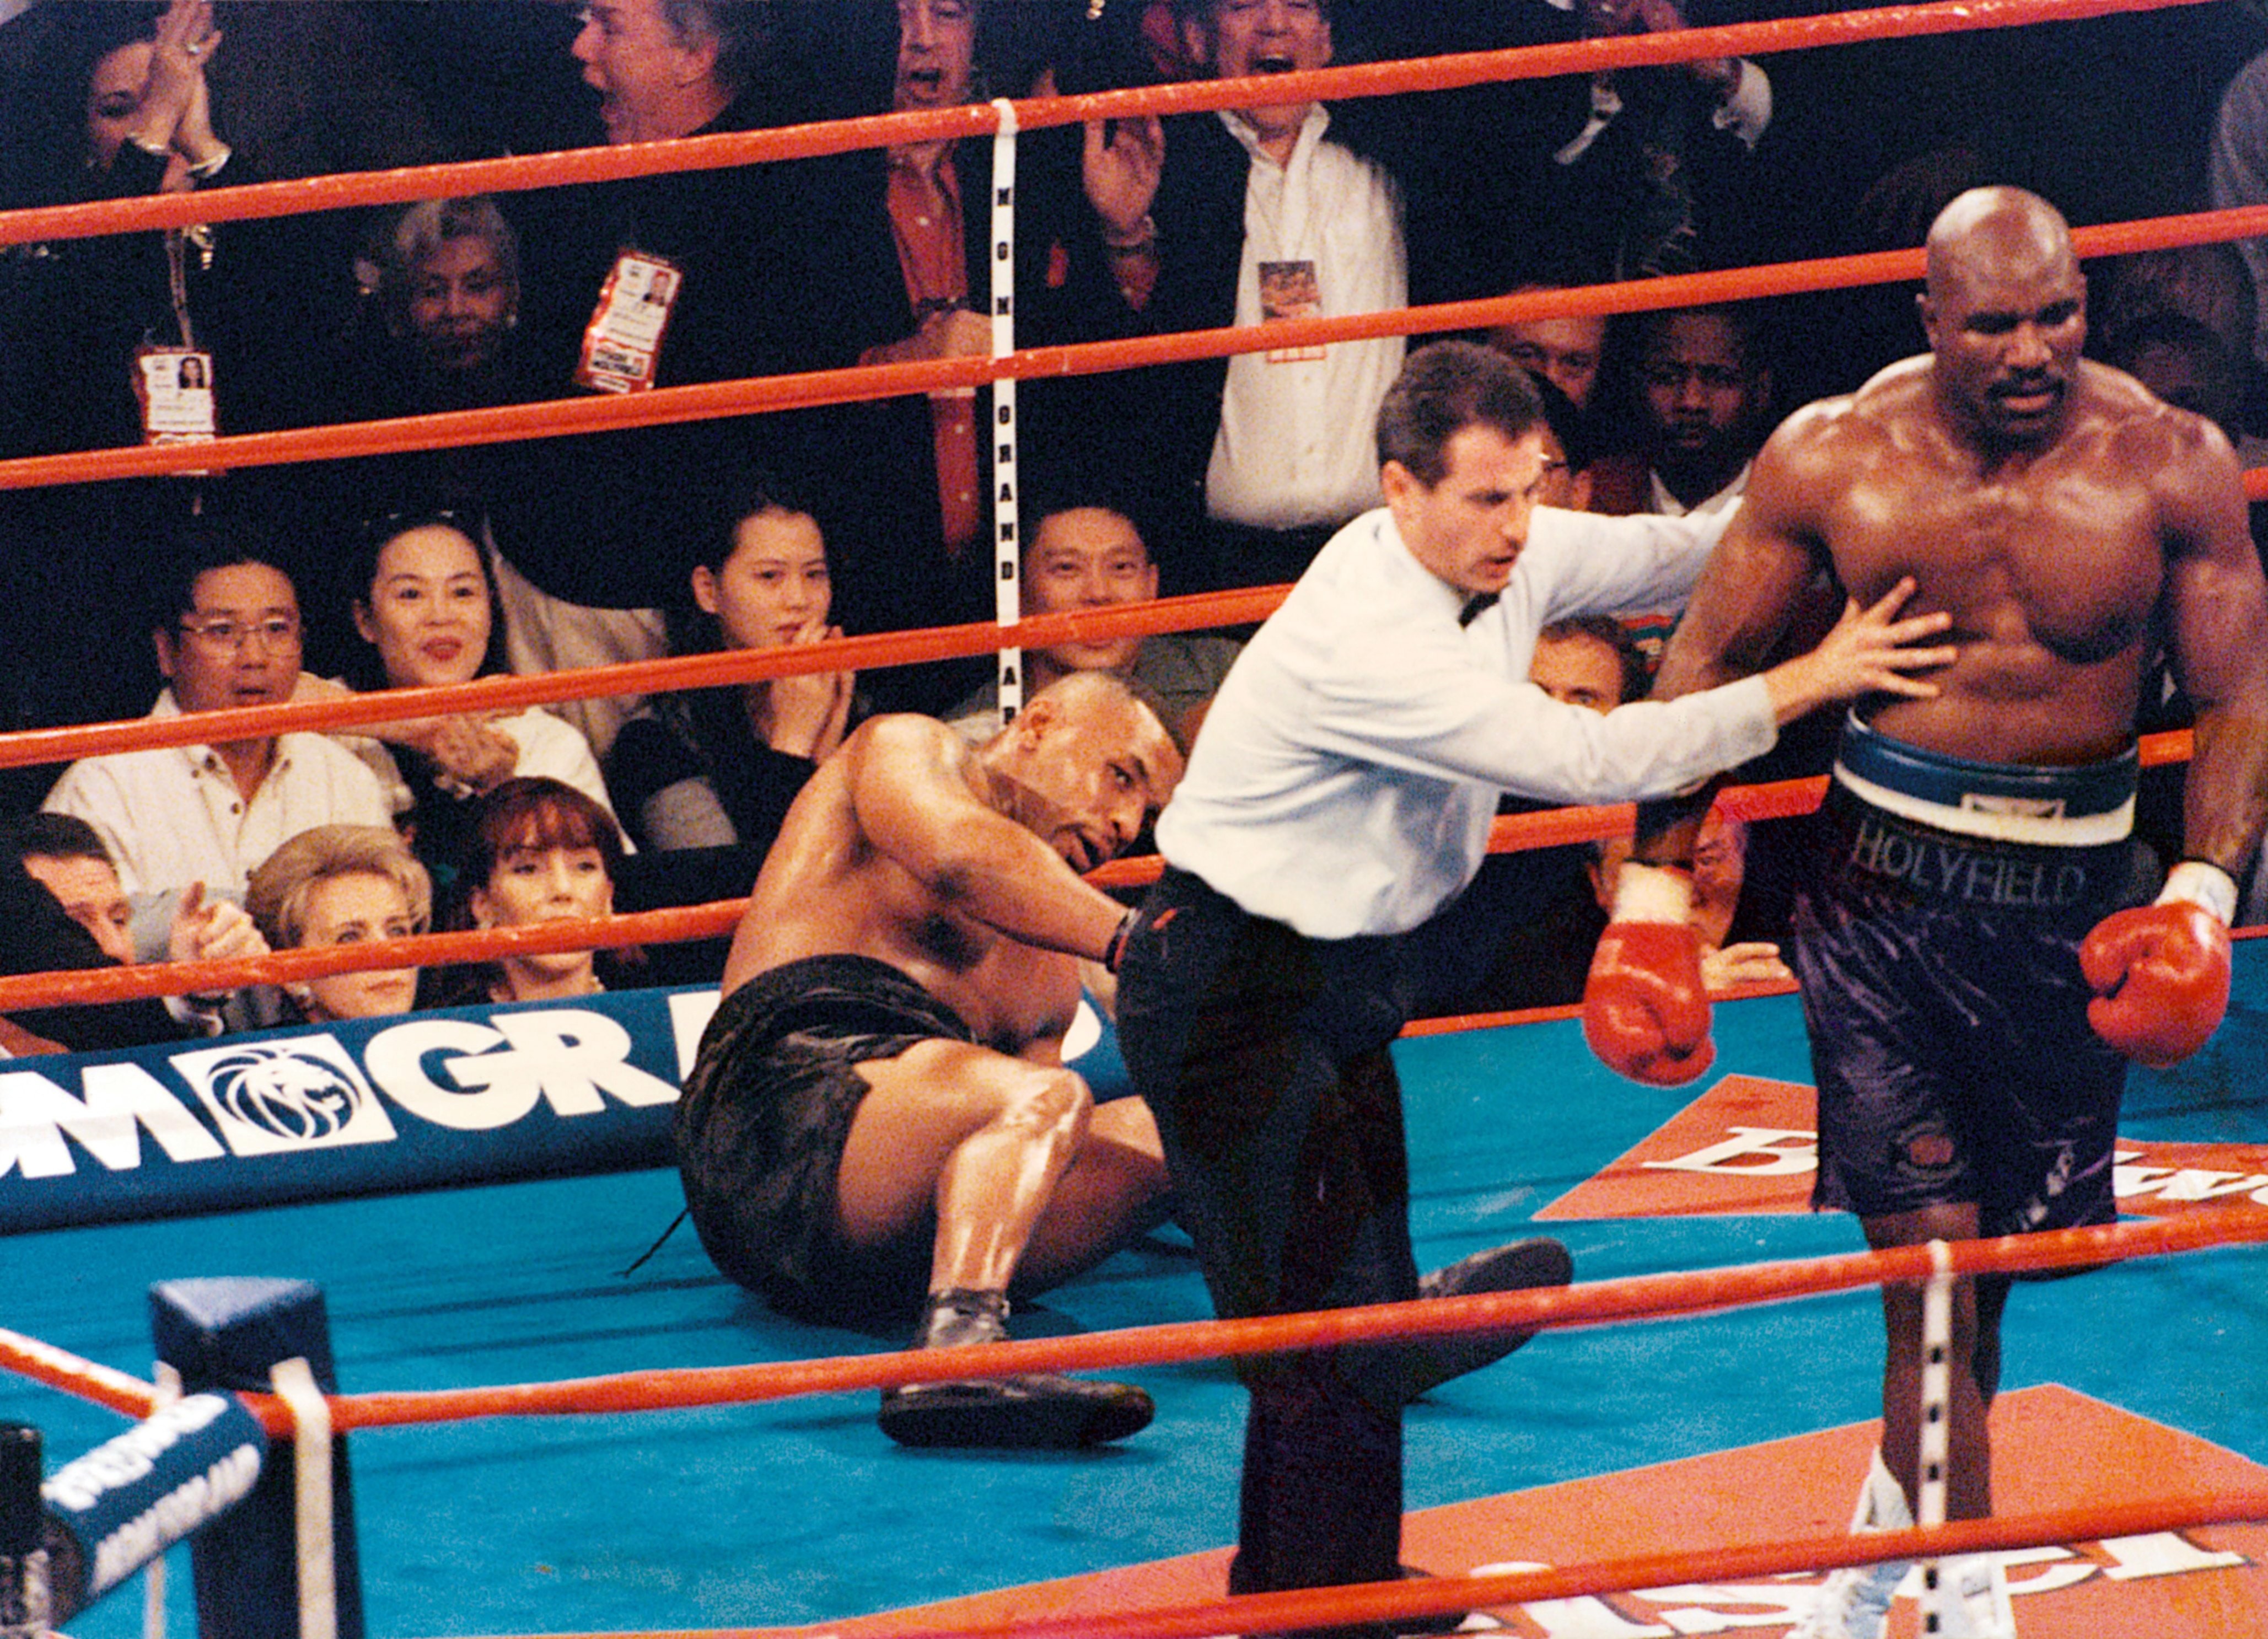 Lutas De Evander Holyfield Holyfield revela primeira luta com Tyson quando o rival tinha 17 anos -  Monet | Notícias